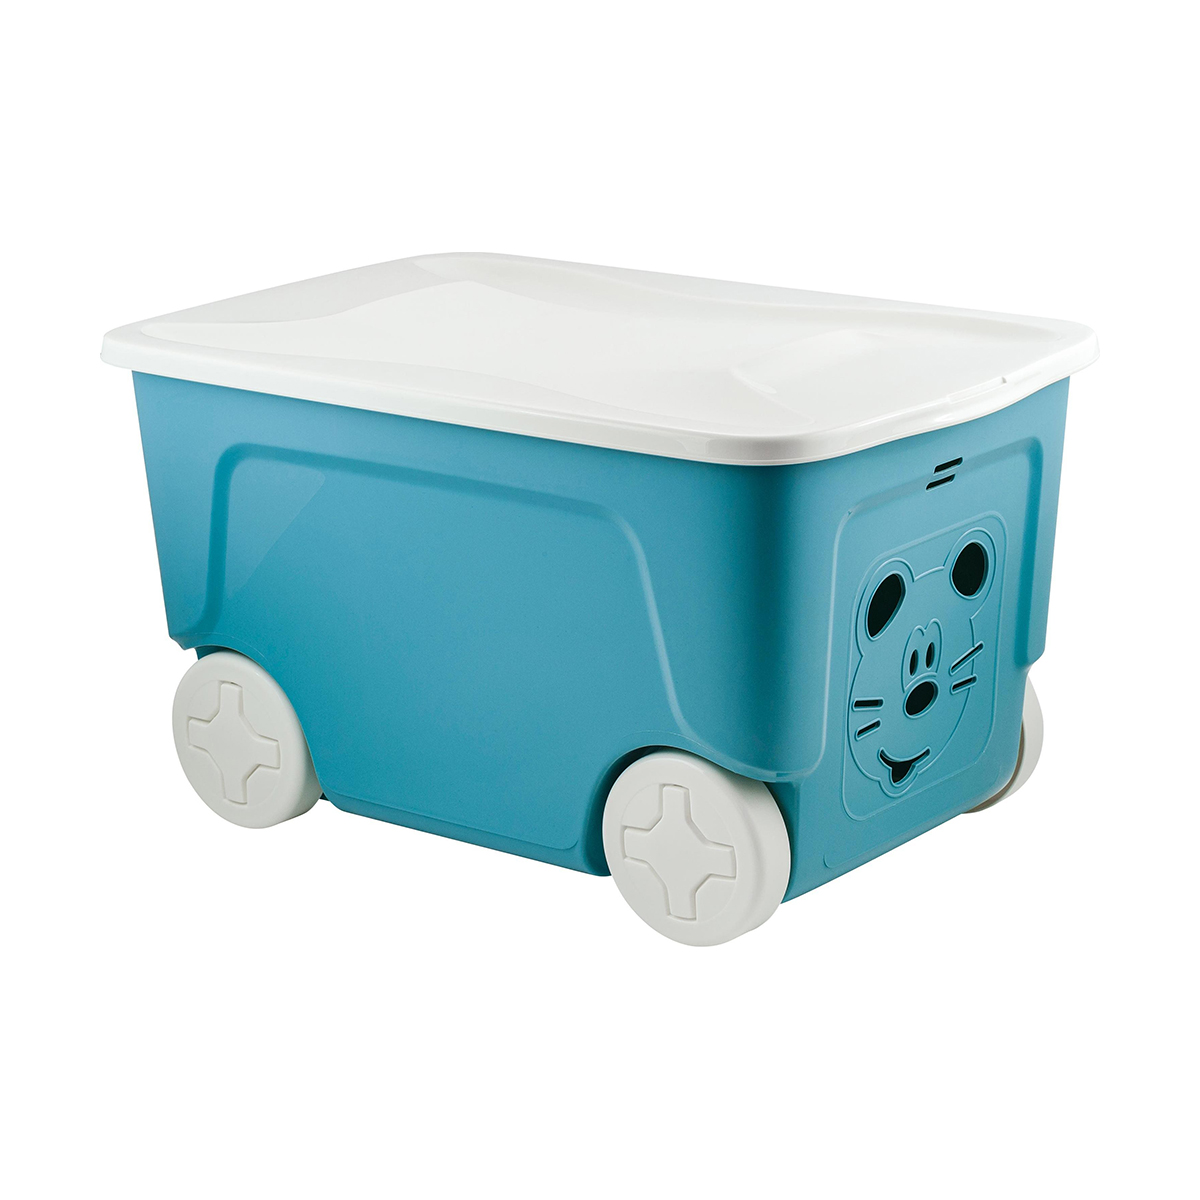 Ящик для игрушек на колесах Lalababy Play with Me, 59 x 38,3 x 33 см, 50 л, синий колокол детский ящик малышарики на колесах 50 л карамельный